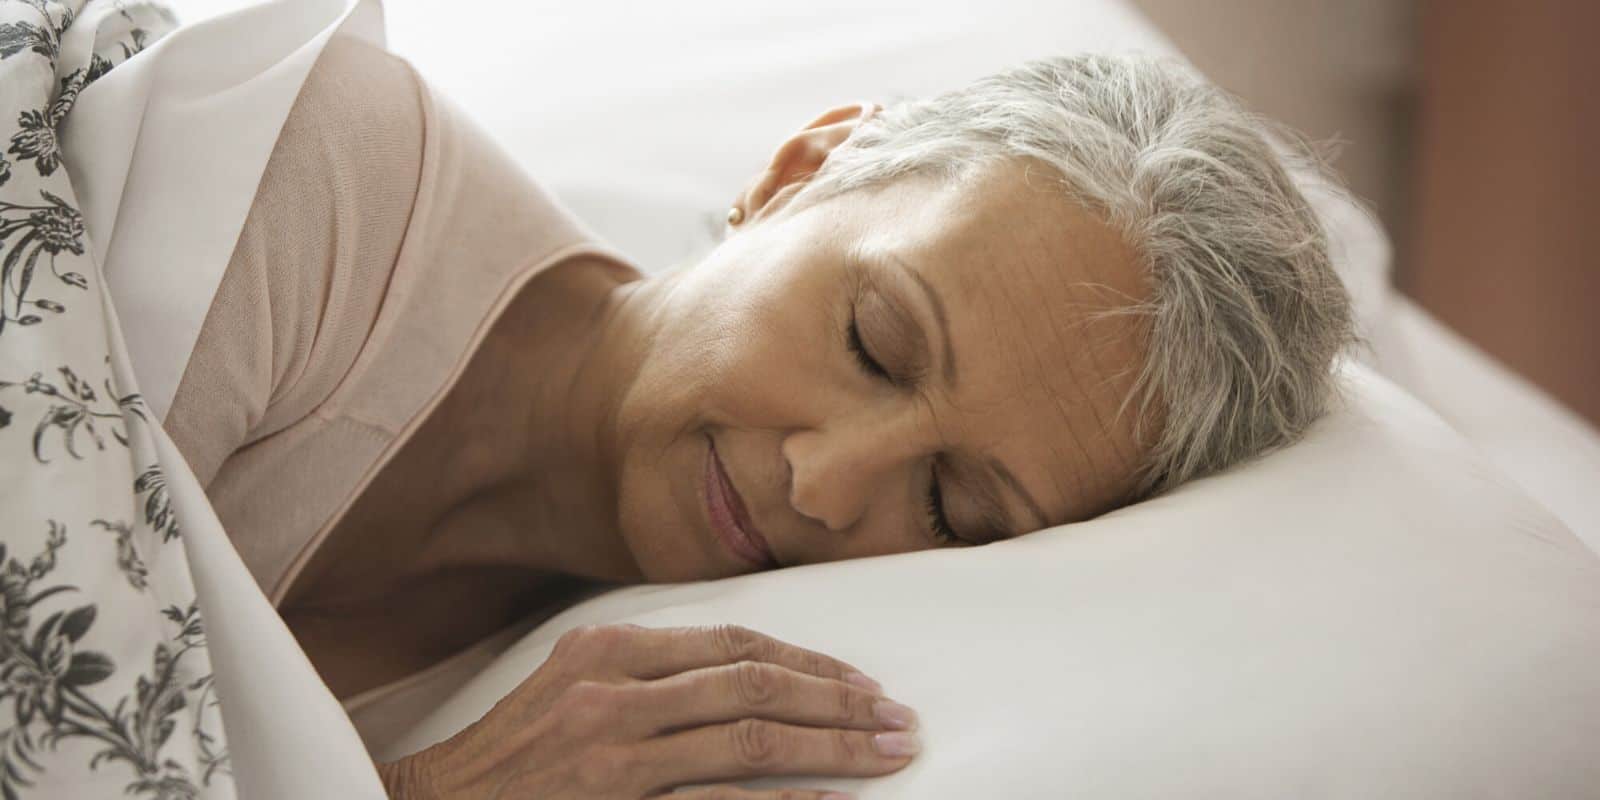 Máy Massage Cho Người Già Chăm Sóc Sức Khỏe